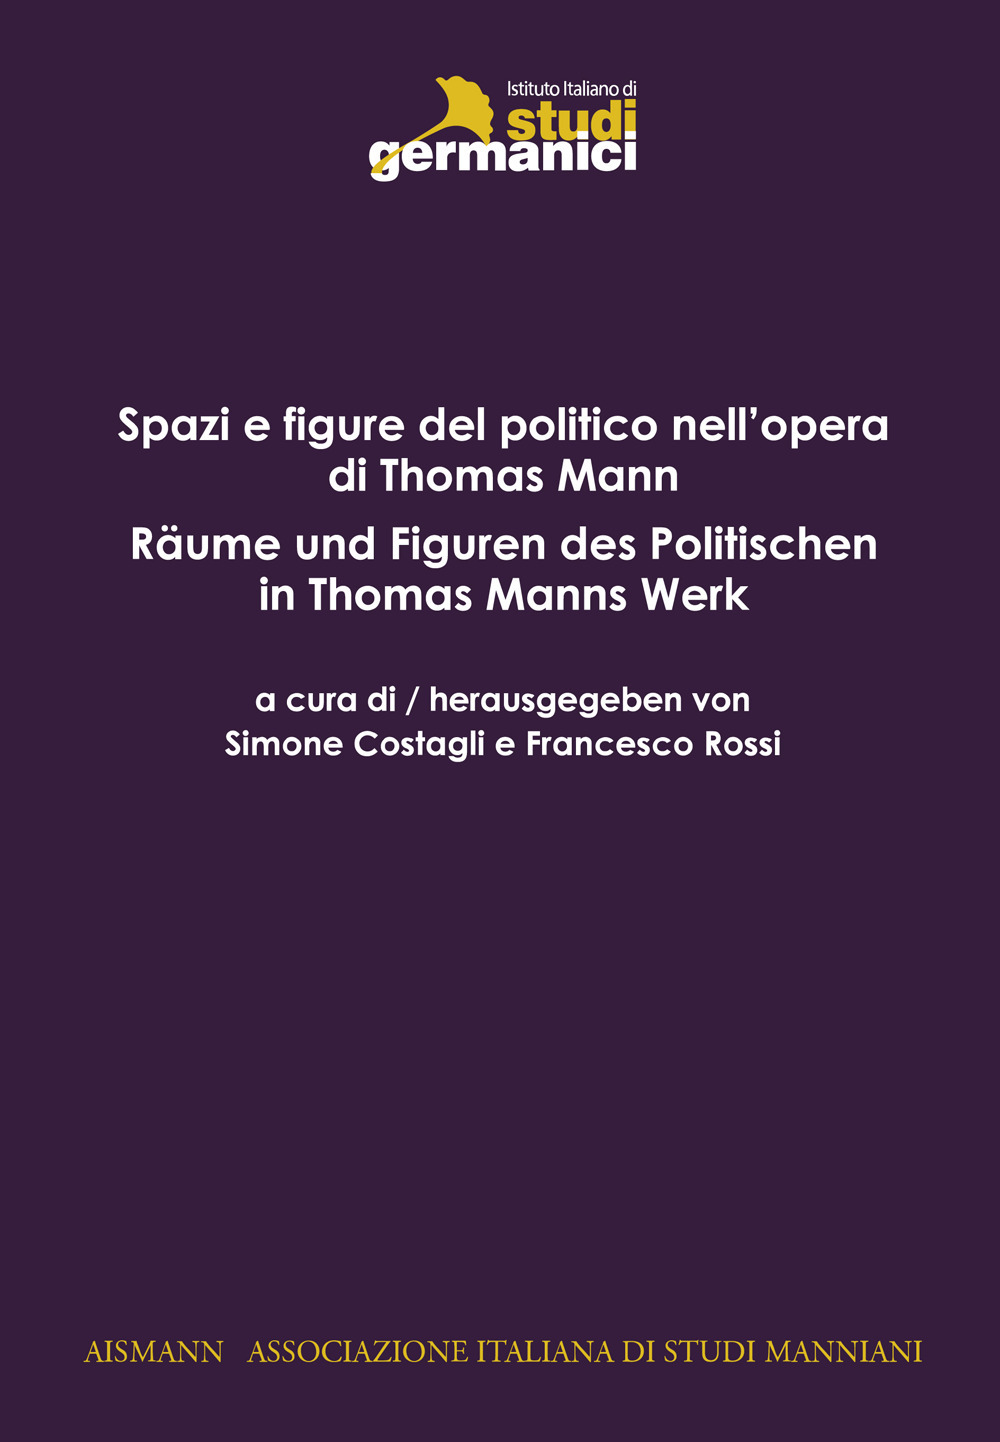 Spazi e figure del politico in Thomas Mann-Räume und Figuren des Politischen in Thomas Mann